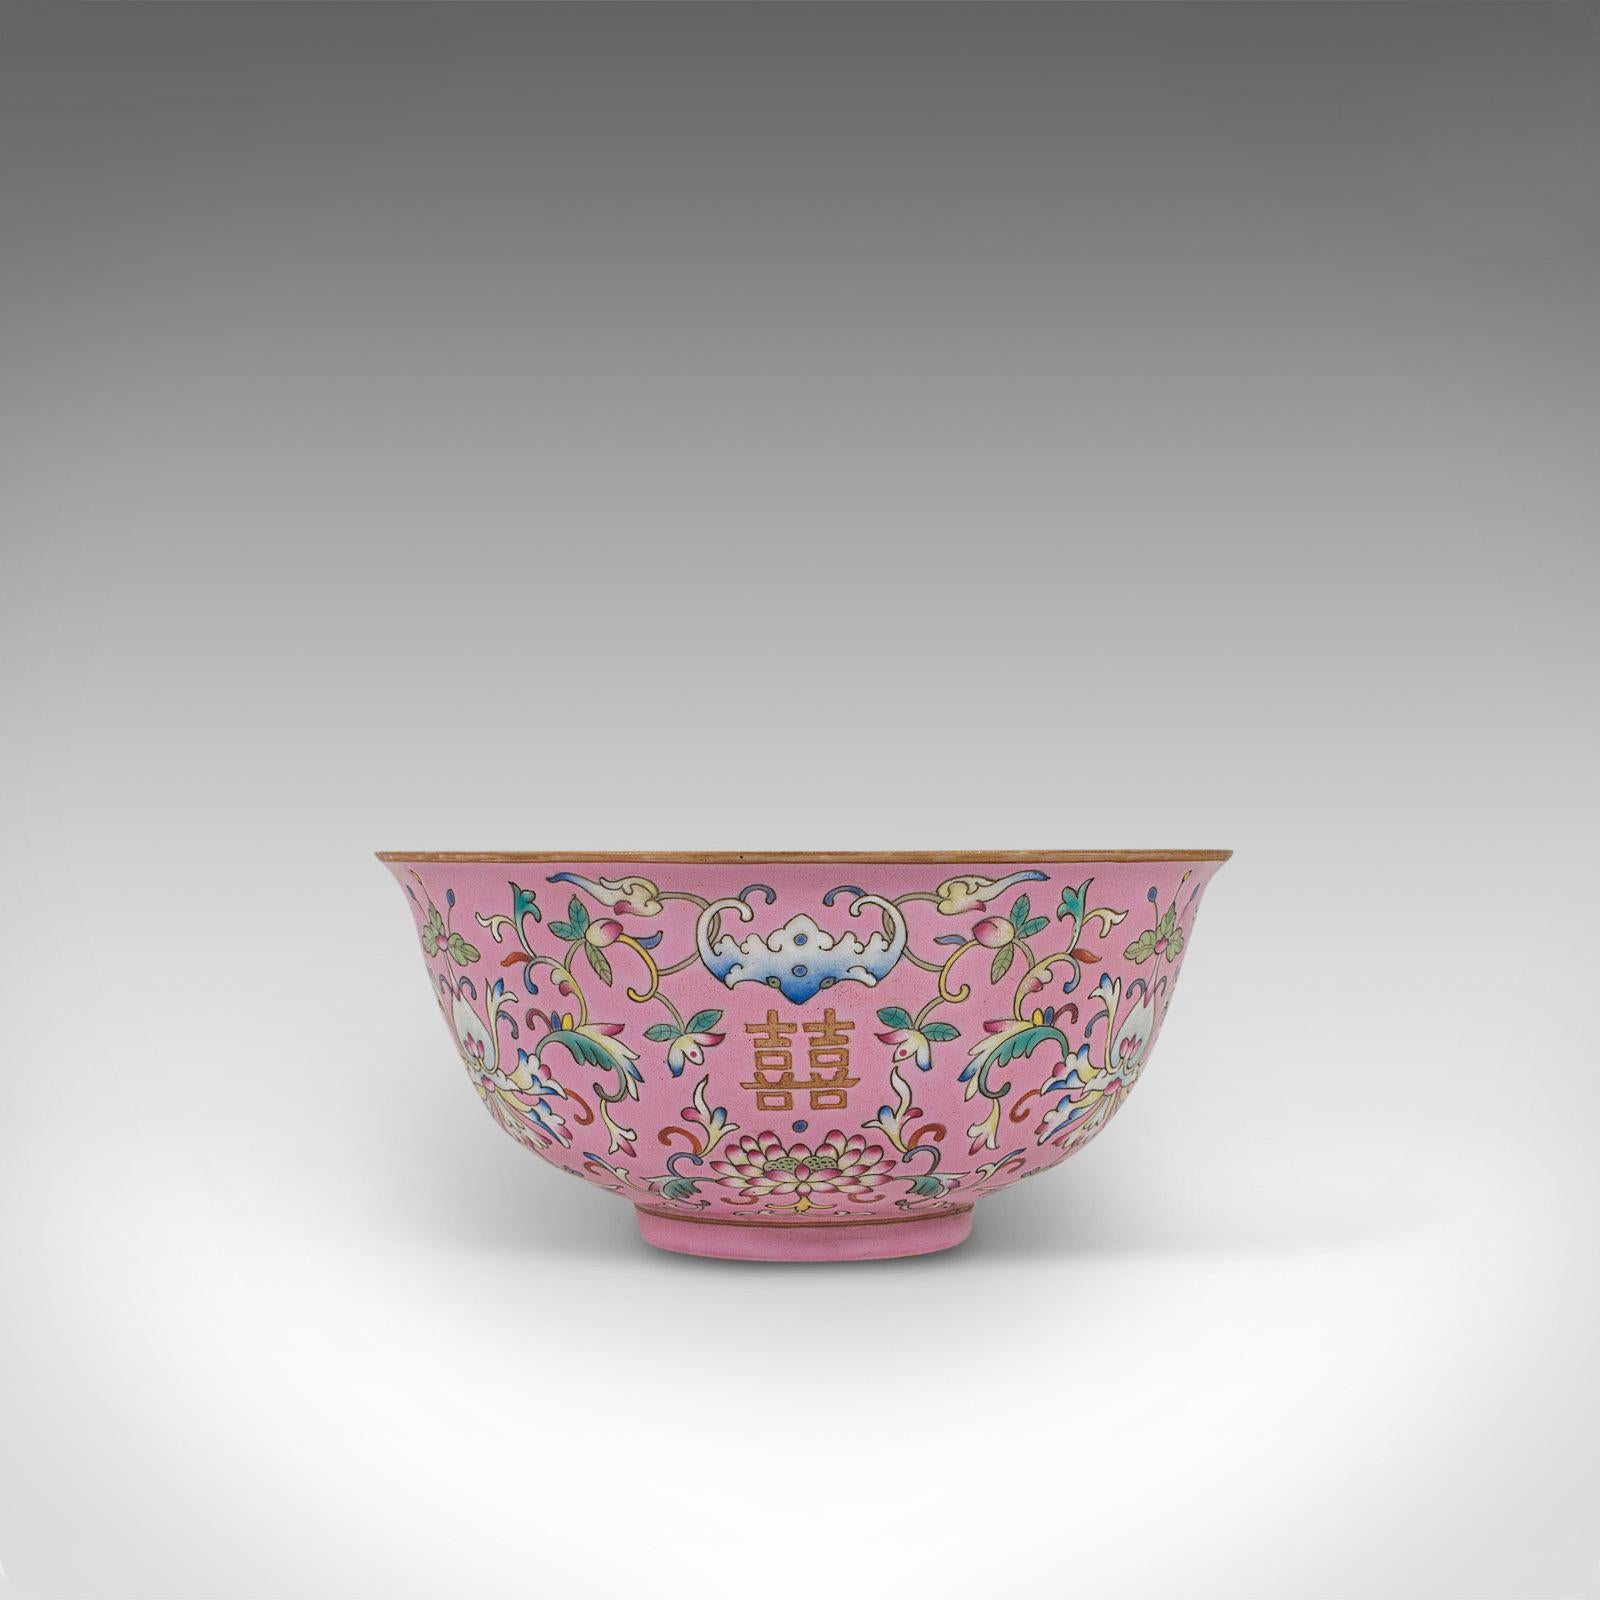 Antique Decorative Marriage Bowl, Chinese, Ceramic, Ceremonial, Dish, circa 1880 1